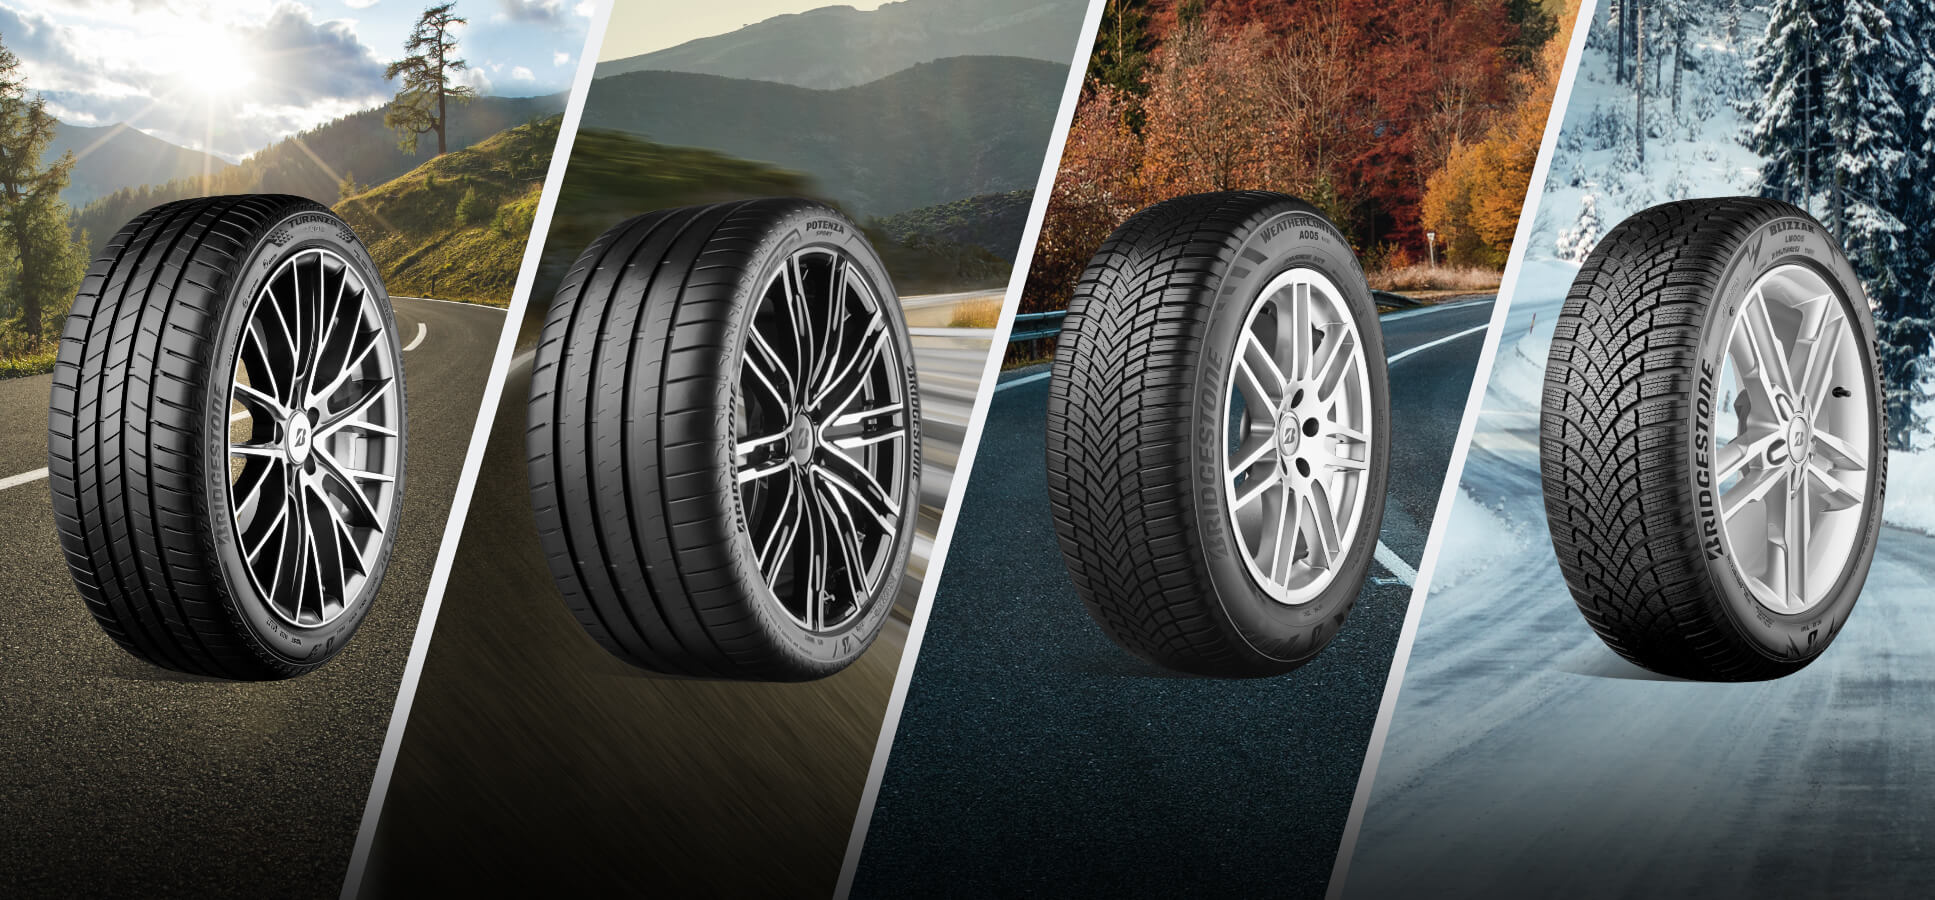 Reifen bewerten und Prämie erhalten Bridgestone Produkte